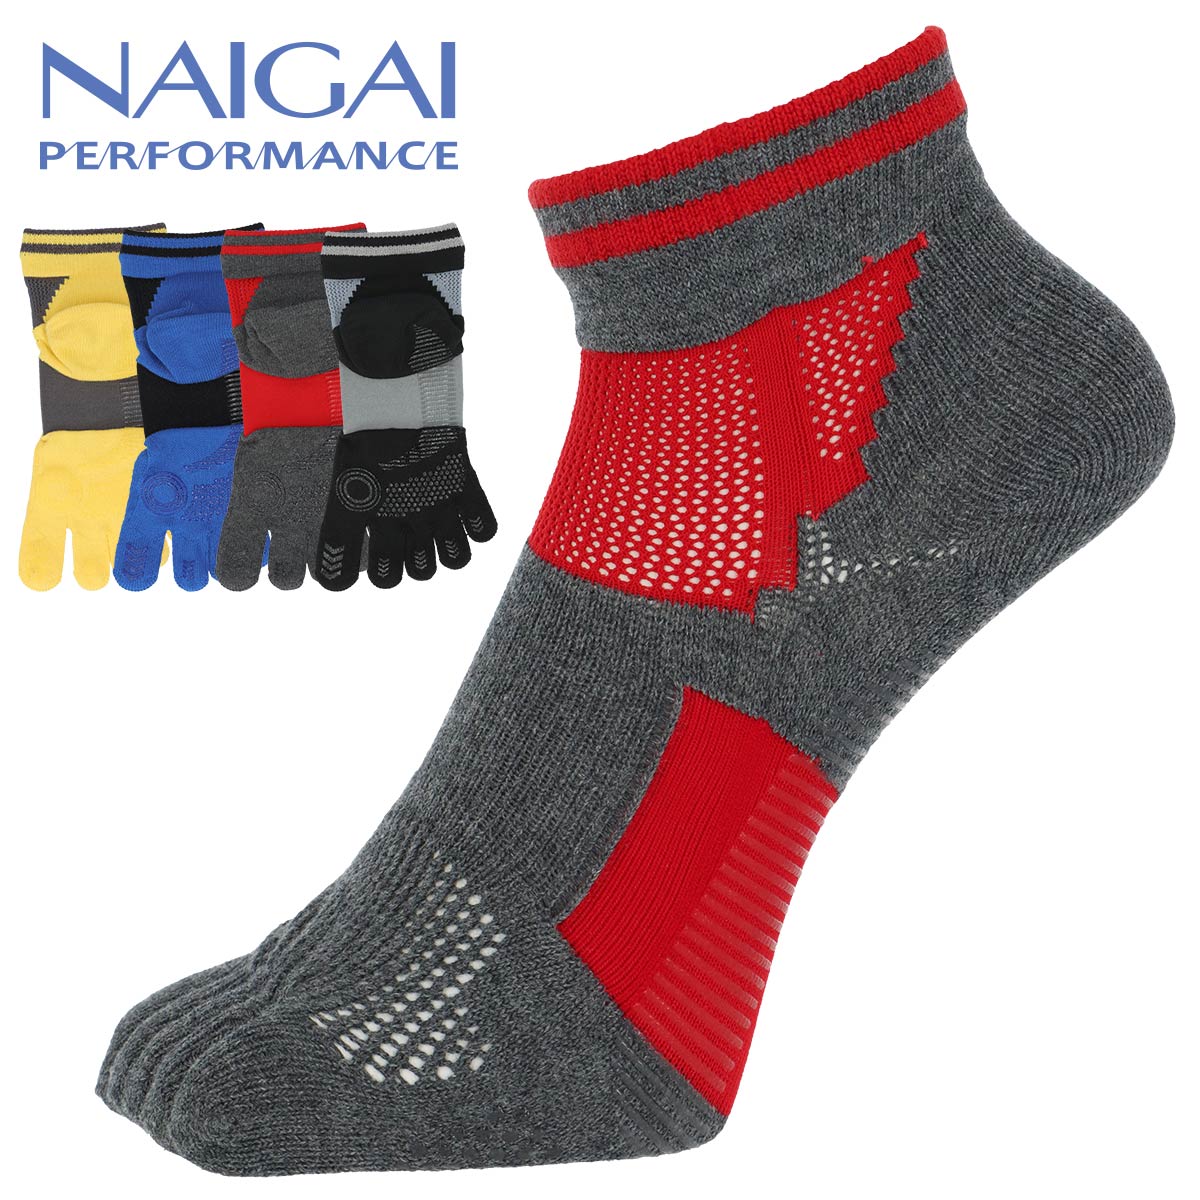 NAIGAI PERFORMANCE ナイガイ パフォーマンス メンズ ソックス 日本製 5本指 吸水速乾 ショート丈 靴下 紳士 02332302